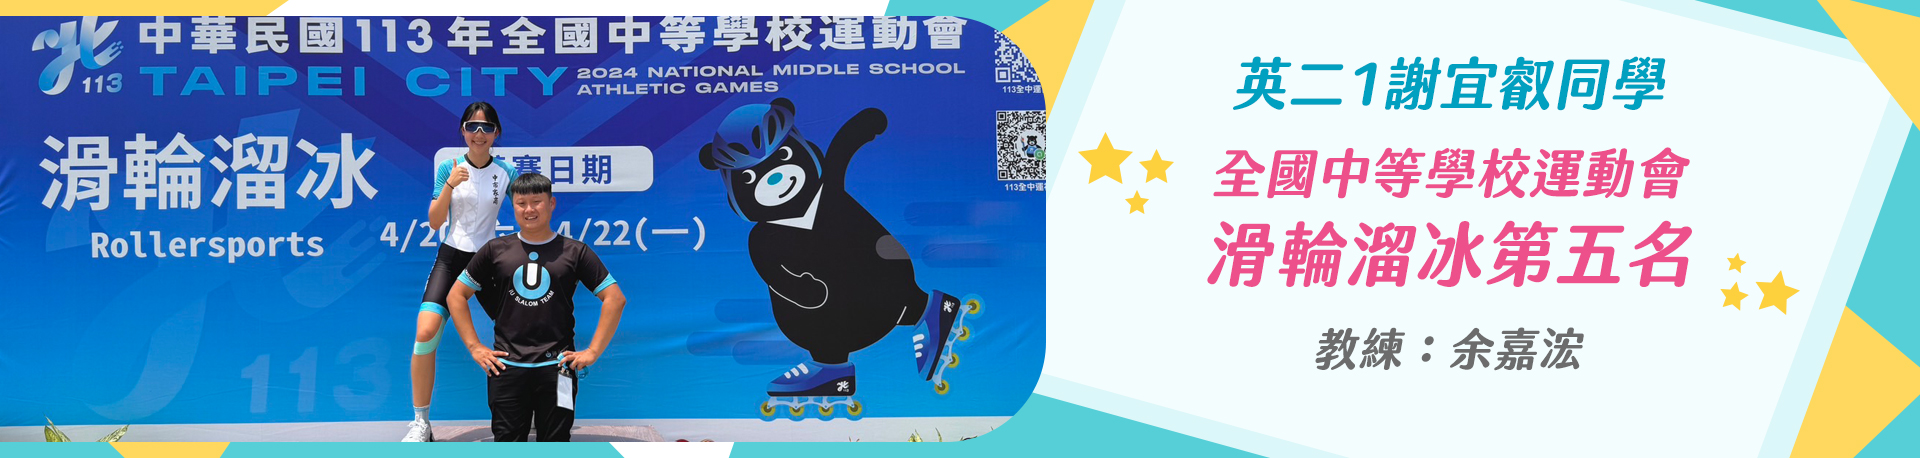 英二1謝宜叡 全國中等學校運動會滑輪溜冰第五名